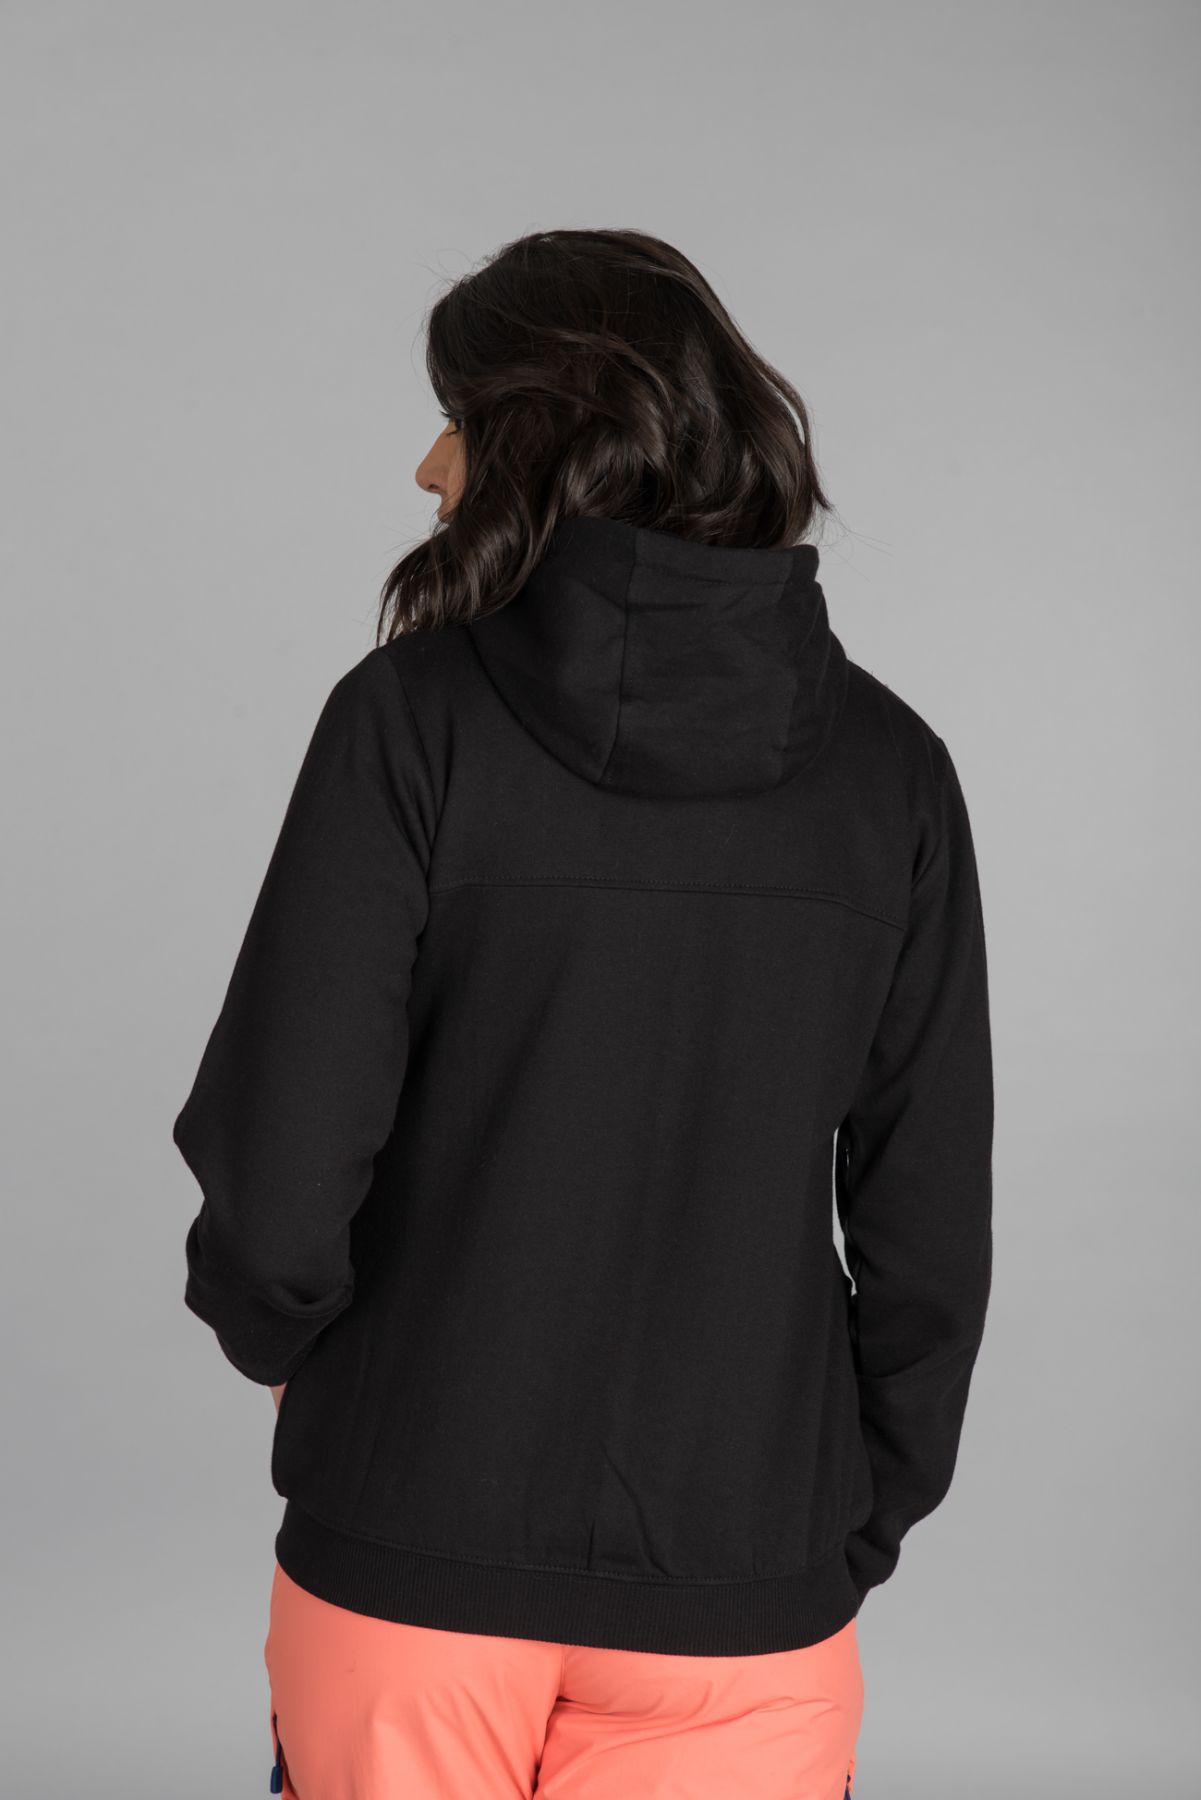 Black Plus Size Sweatshirt | Women